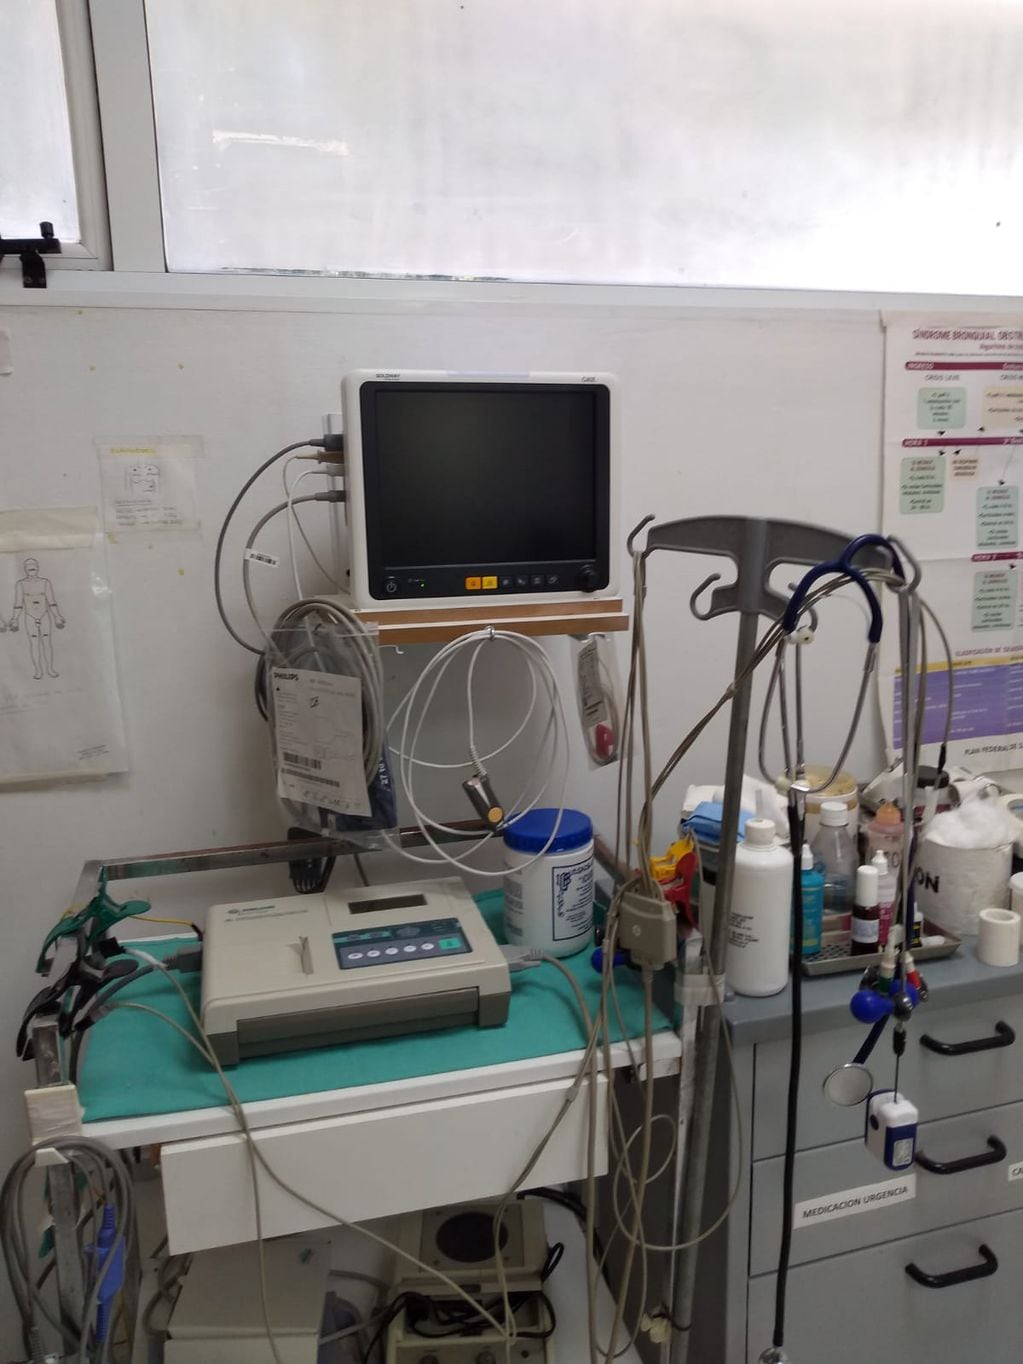 El Centro de Salud de Claromecó continúa sumando equipamiento y profesionales